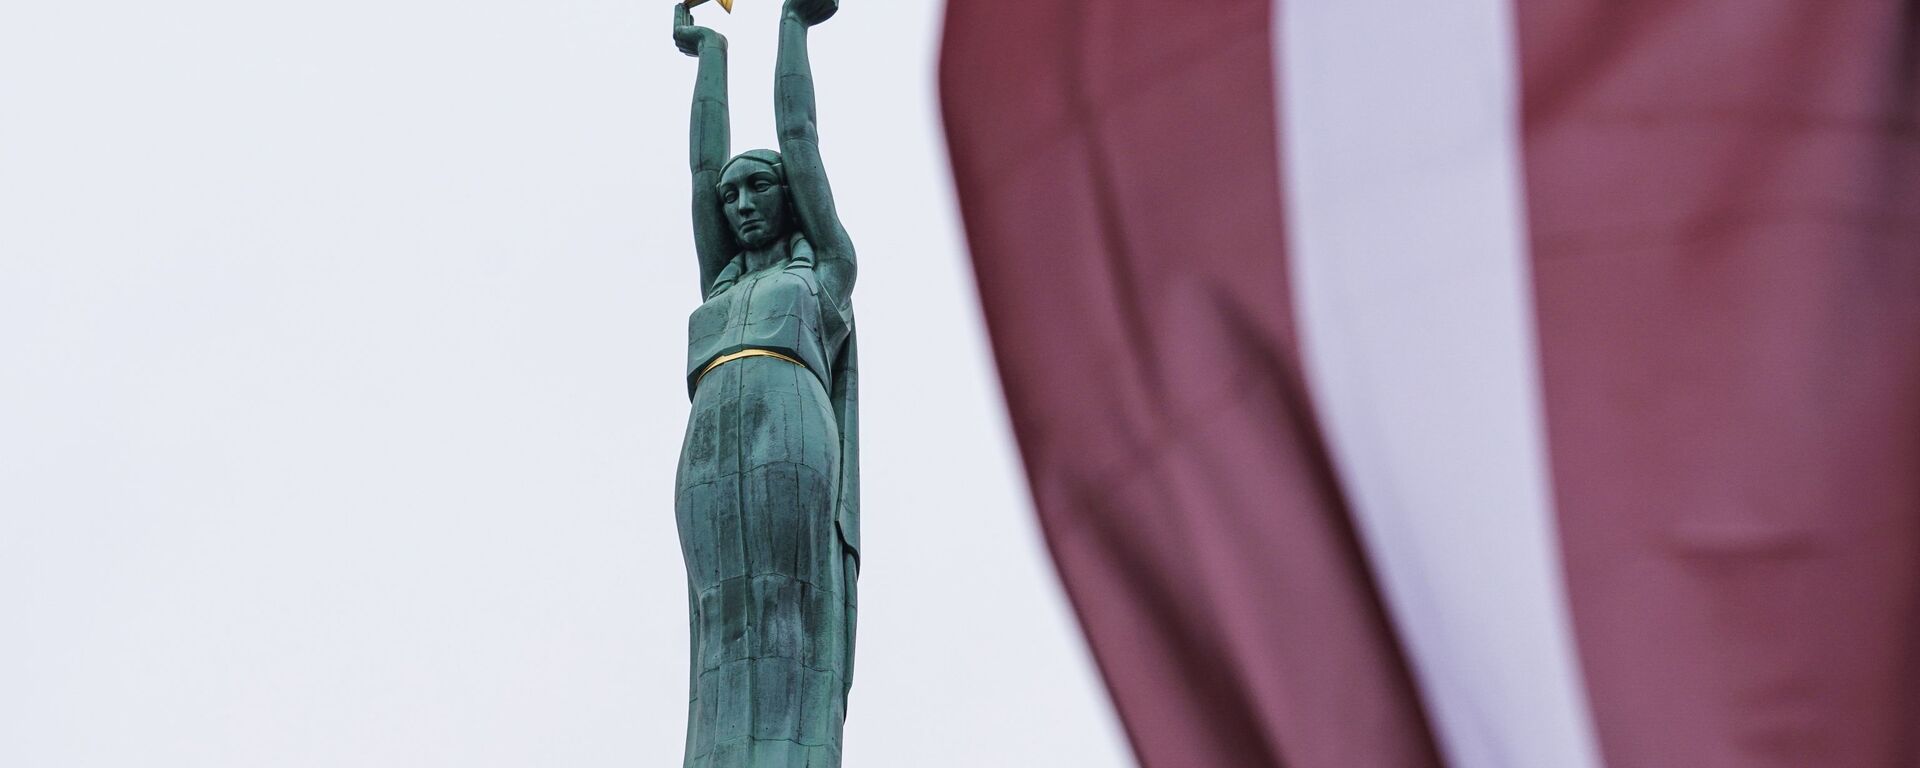 Празднование Дня независимости Латвии - Sputnik Латвия, 1920, 02.06.2021